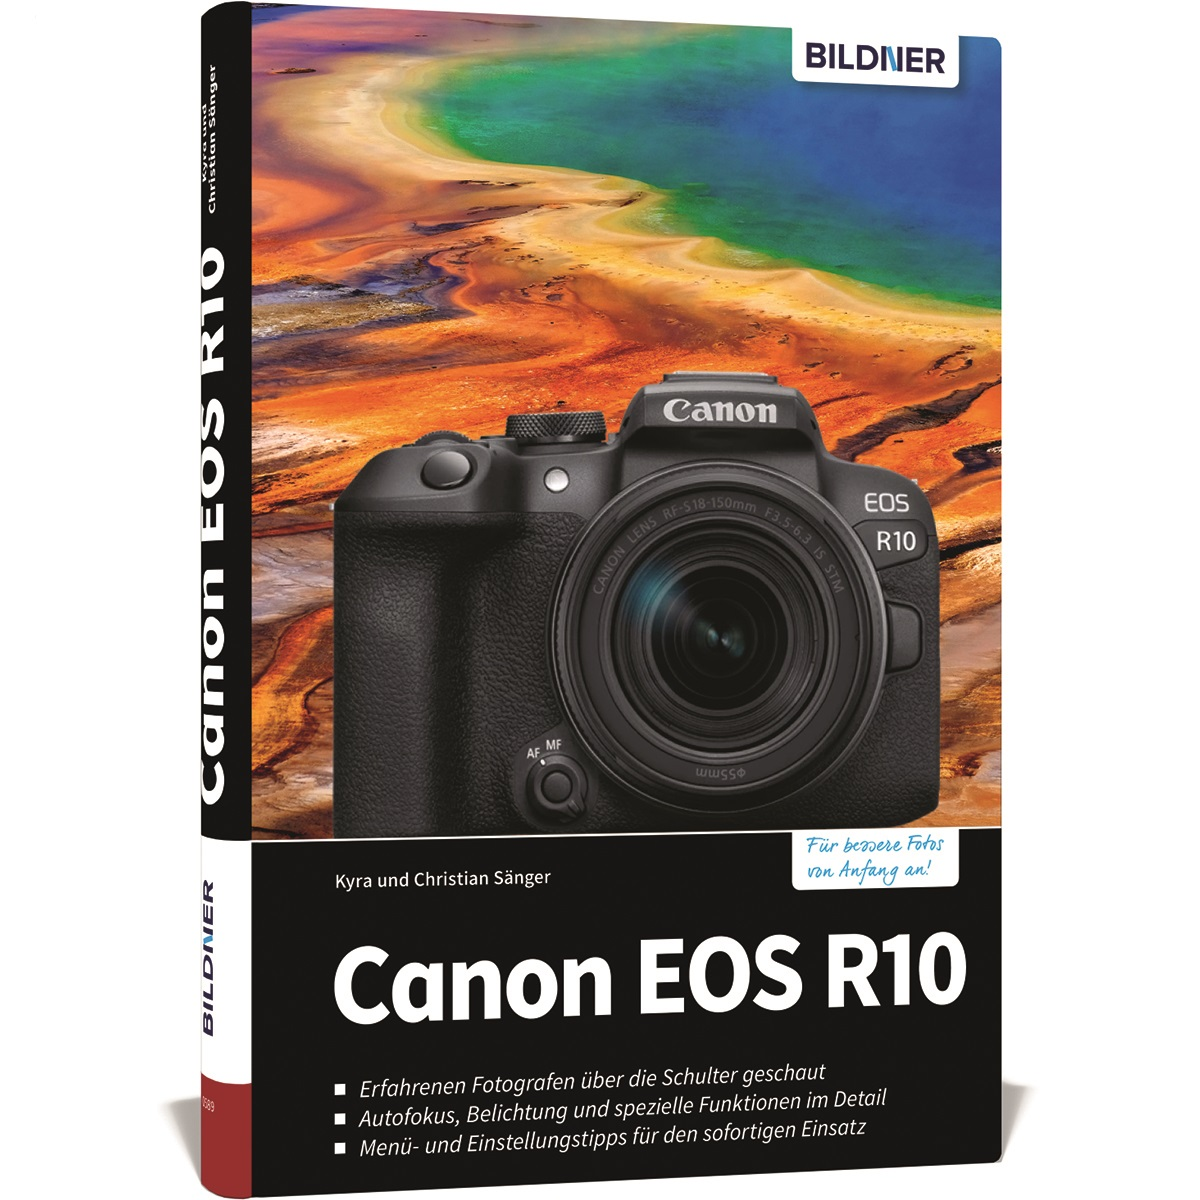 Canon EOS R10 - Das zu umfangreiche Ihrer Praxisbuch Kamera